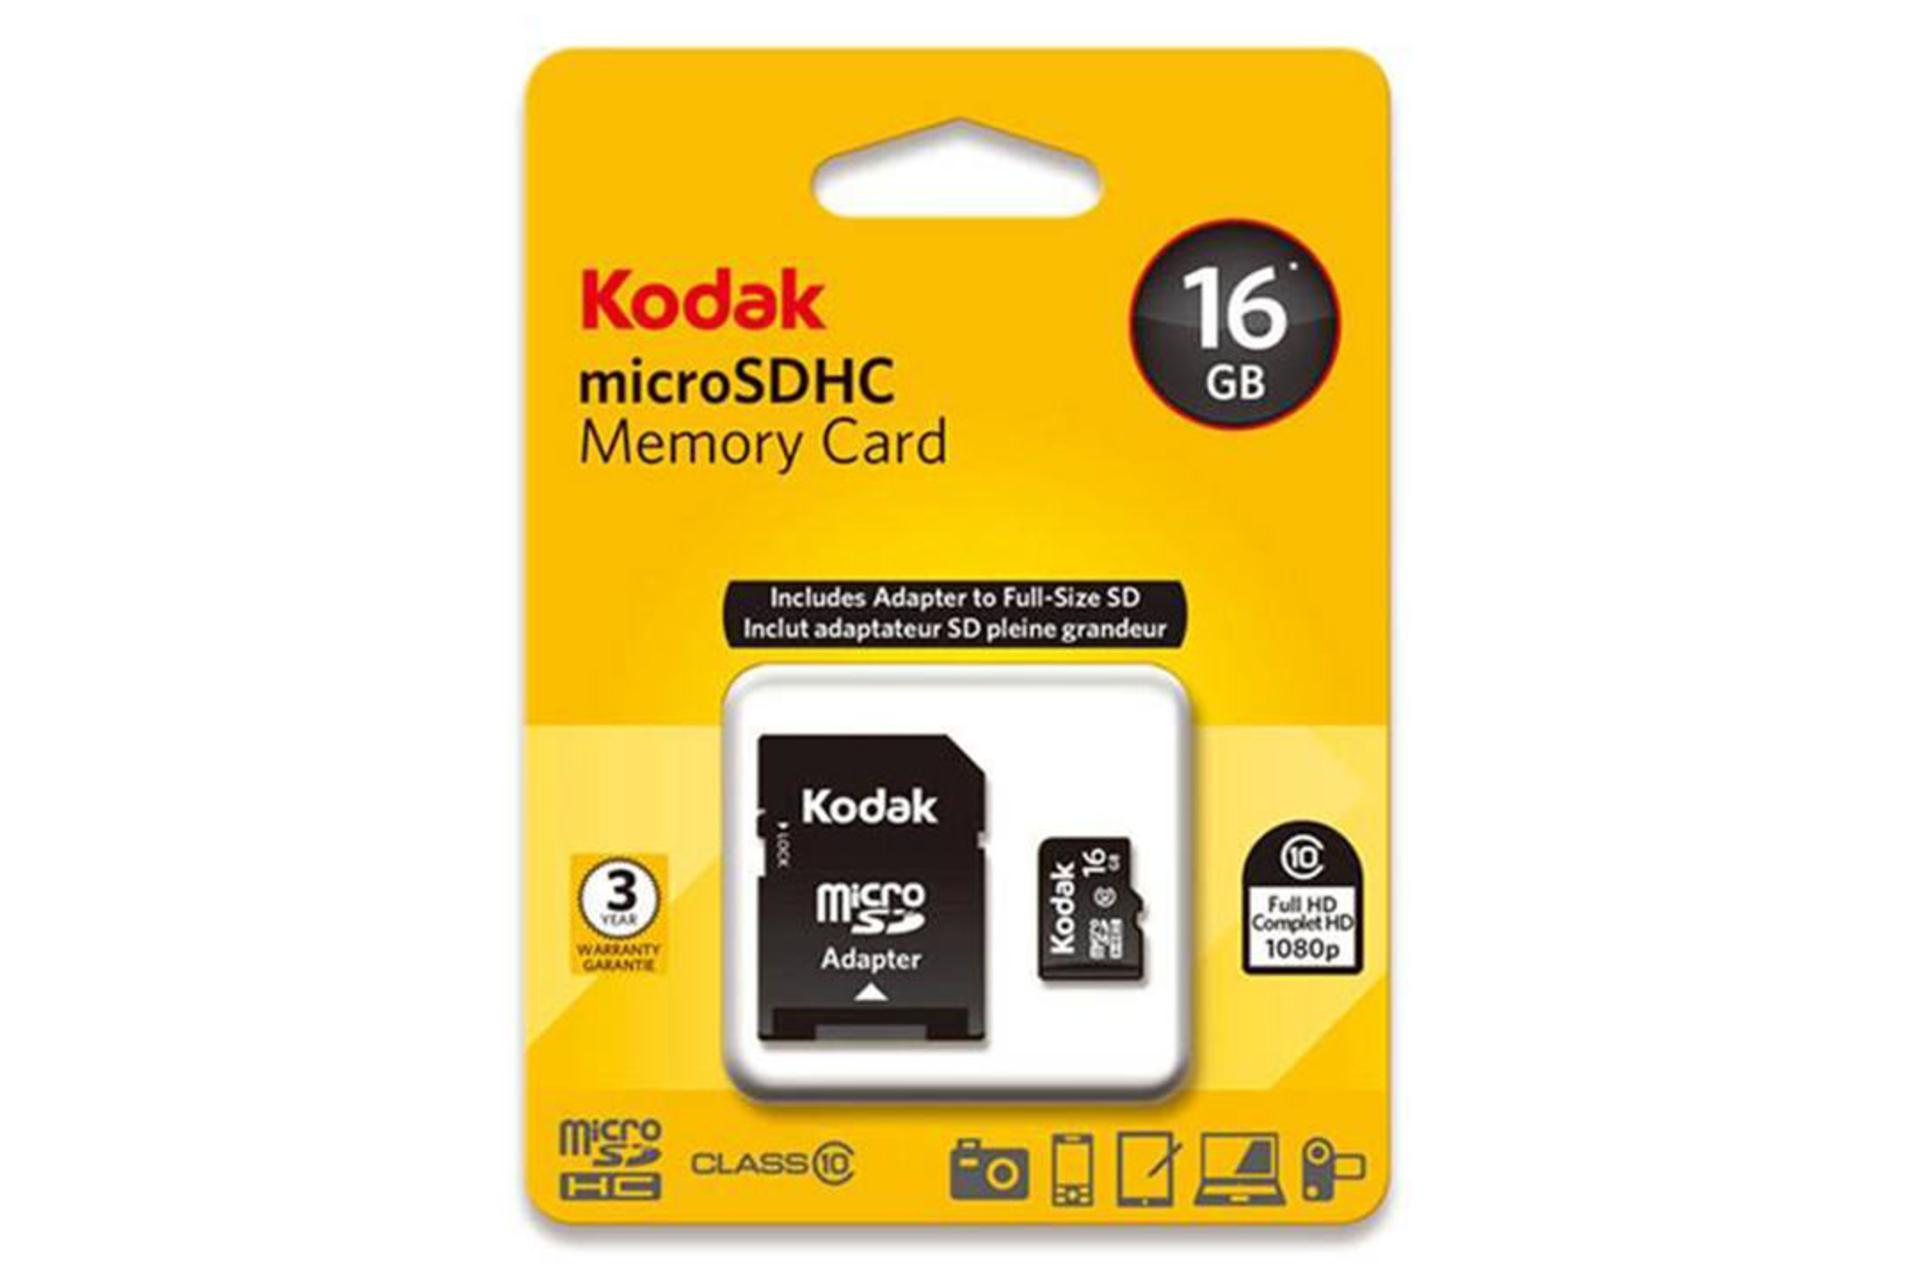 Kodak microSDHC Class 10 UHS-I U1 16GB